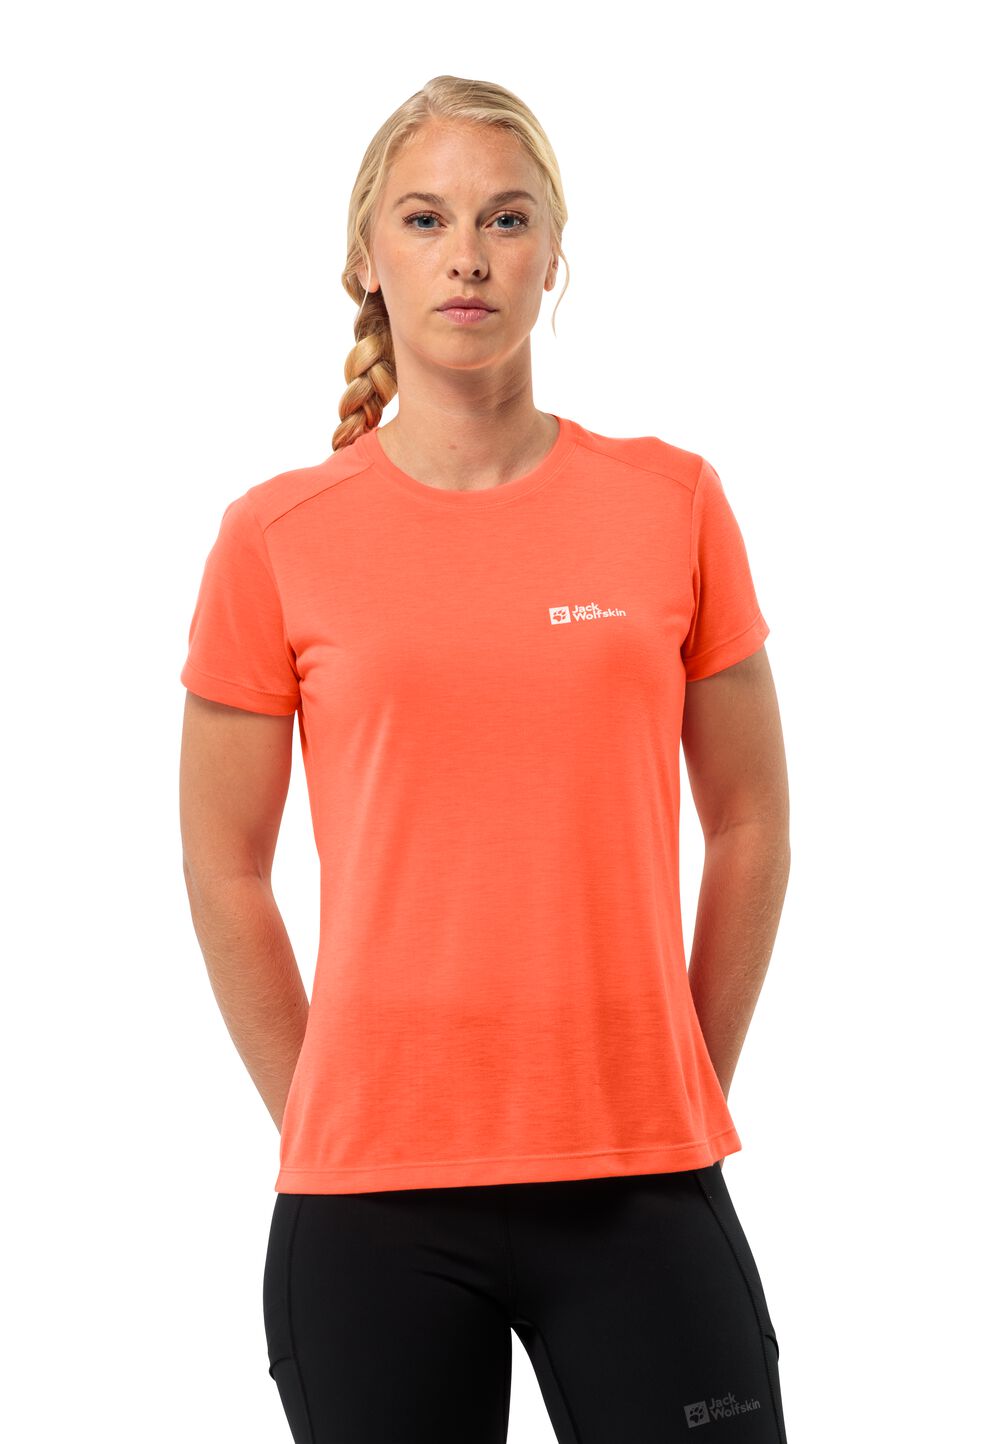 Jack Wolfskin Vonnan S S T-Shirt Women Functioneel shirt Dames XS rood digital orange